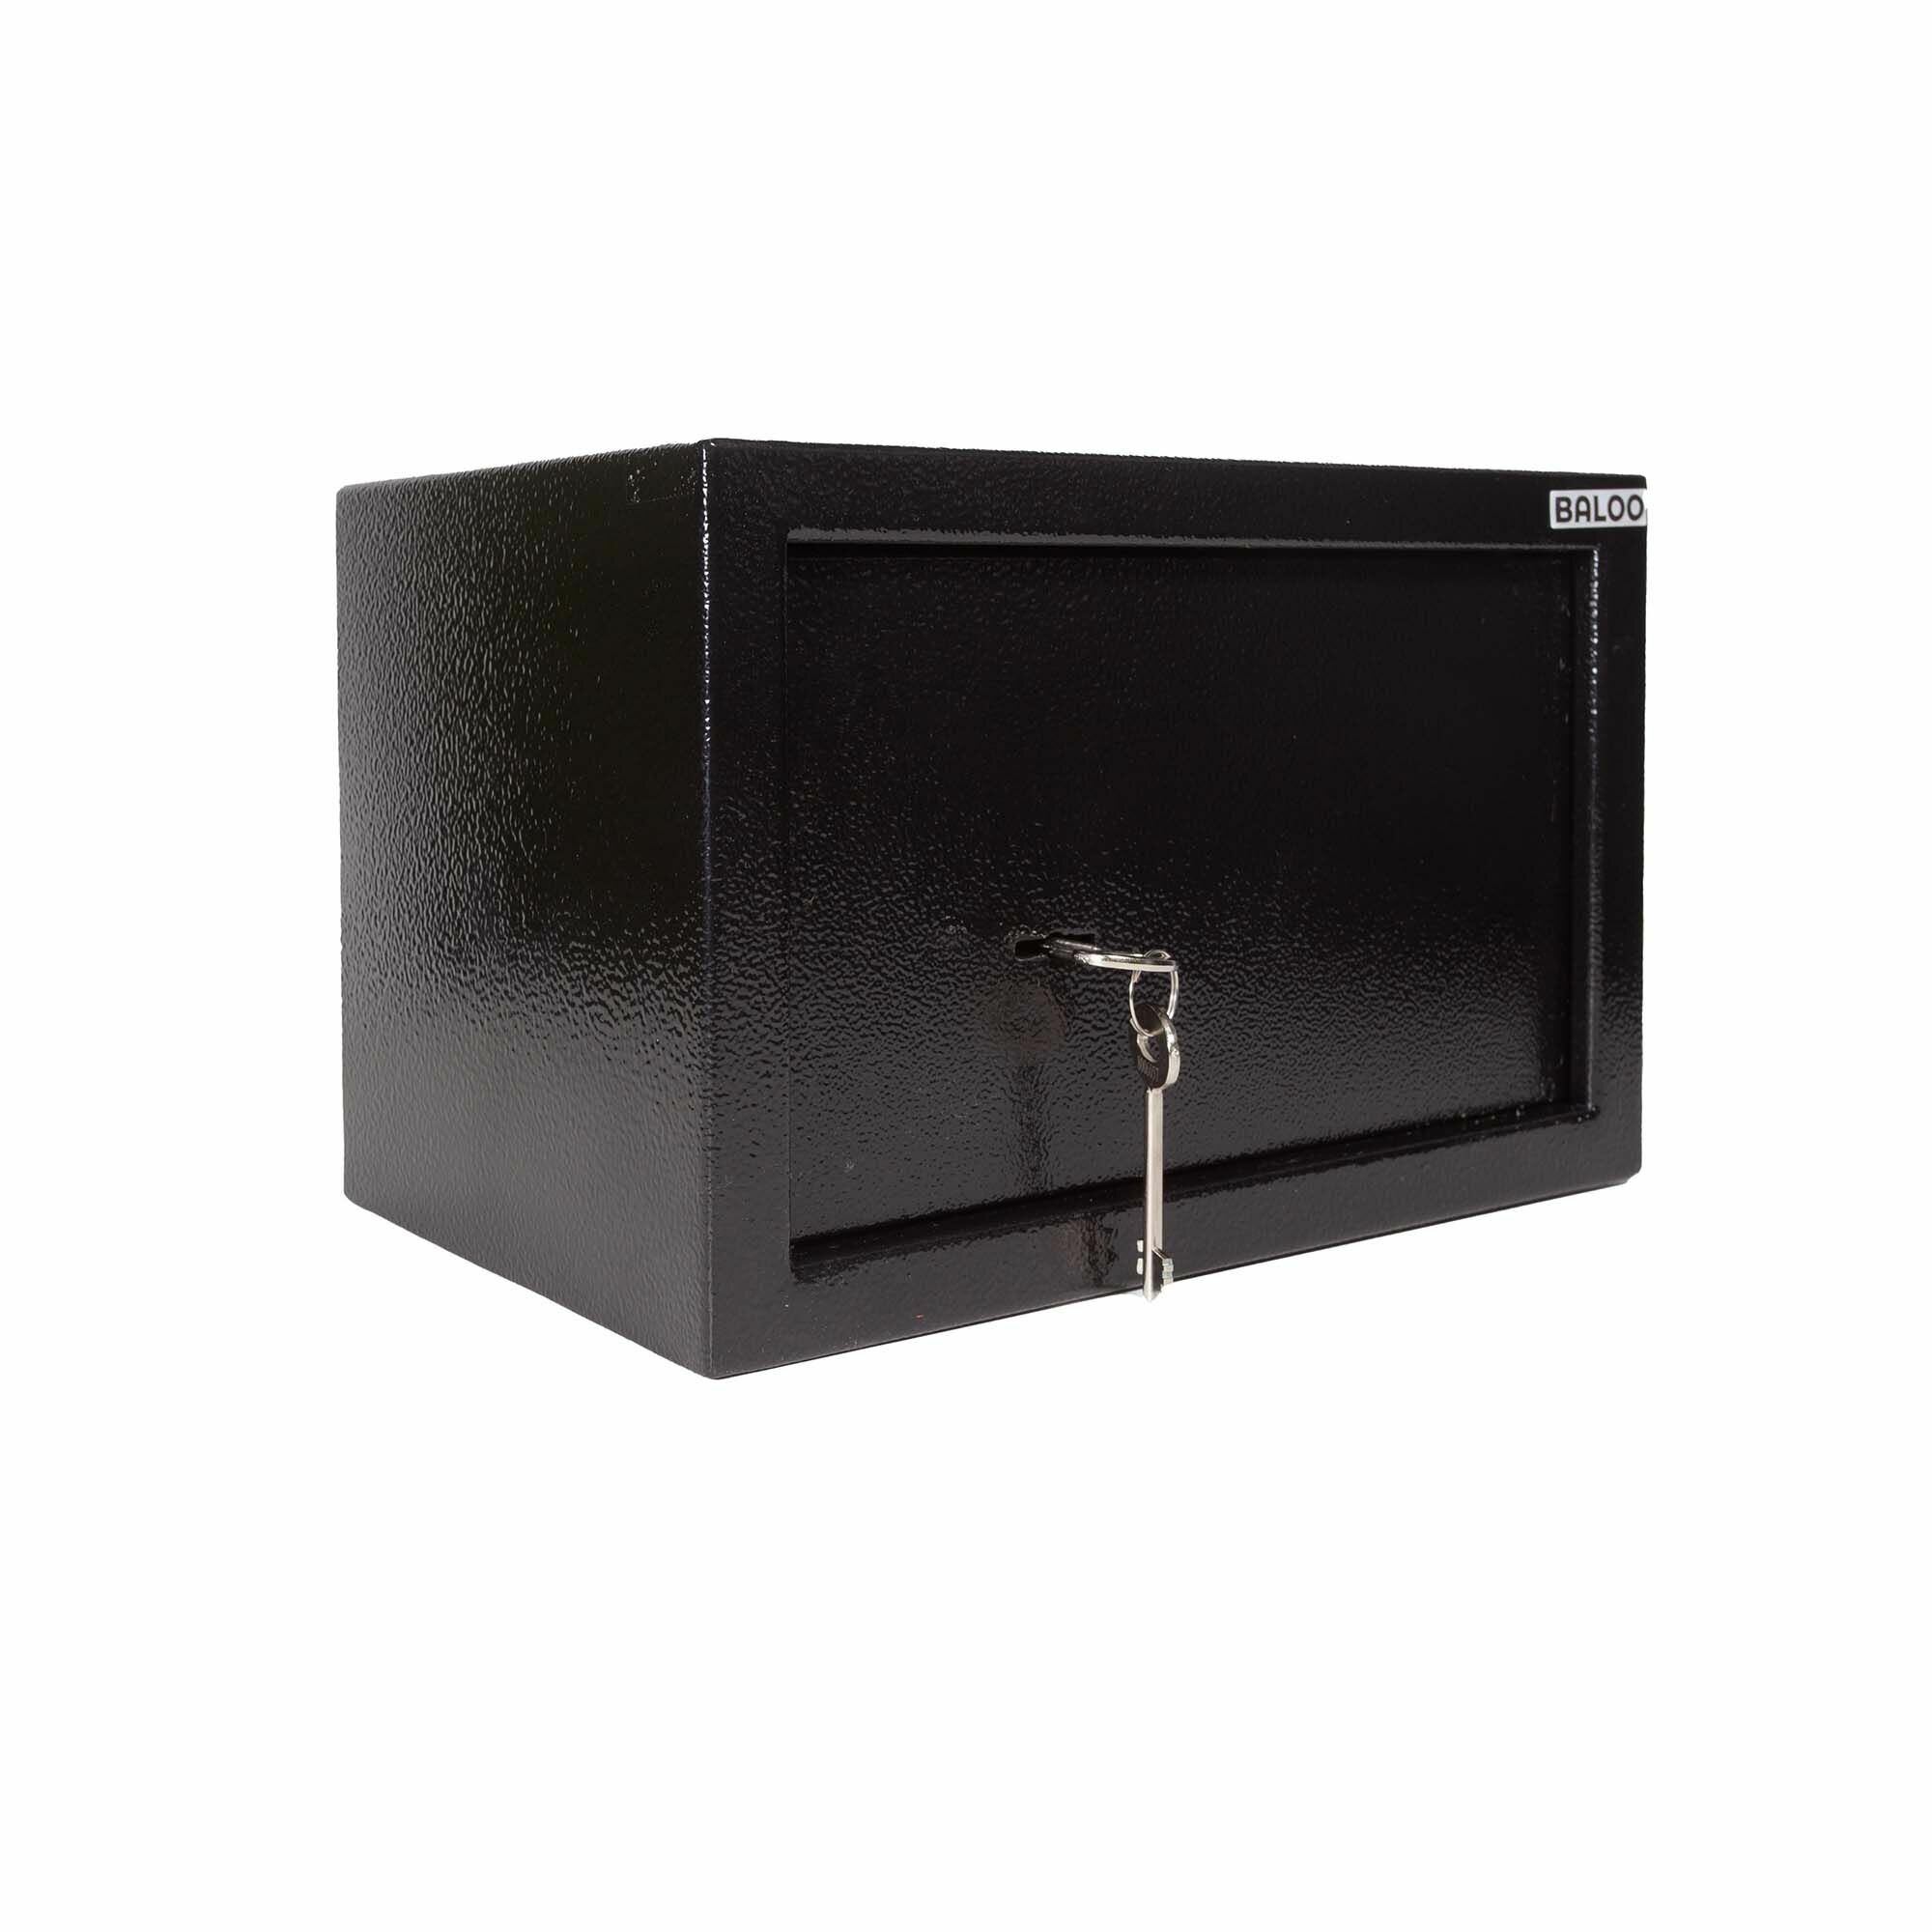 Сейф мебельный Baloo B-SE17EW-BL 230x170 x170мм электронный черный/ подарок для мужчины